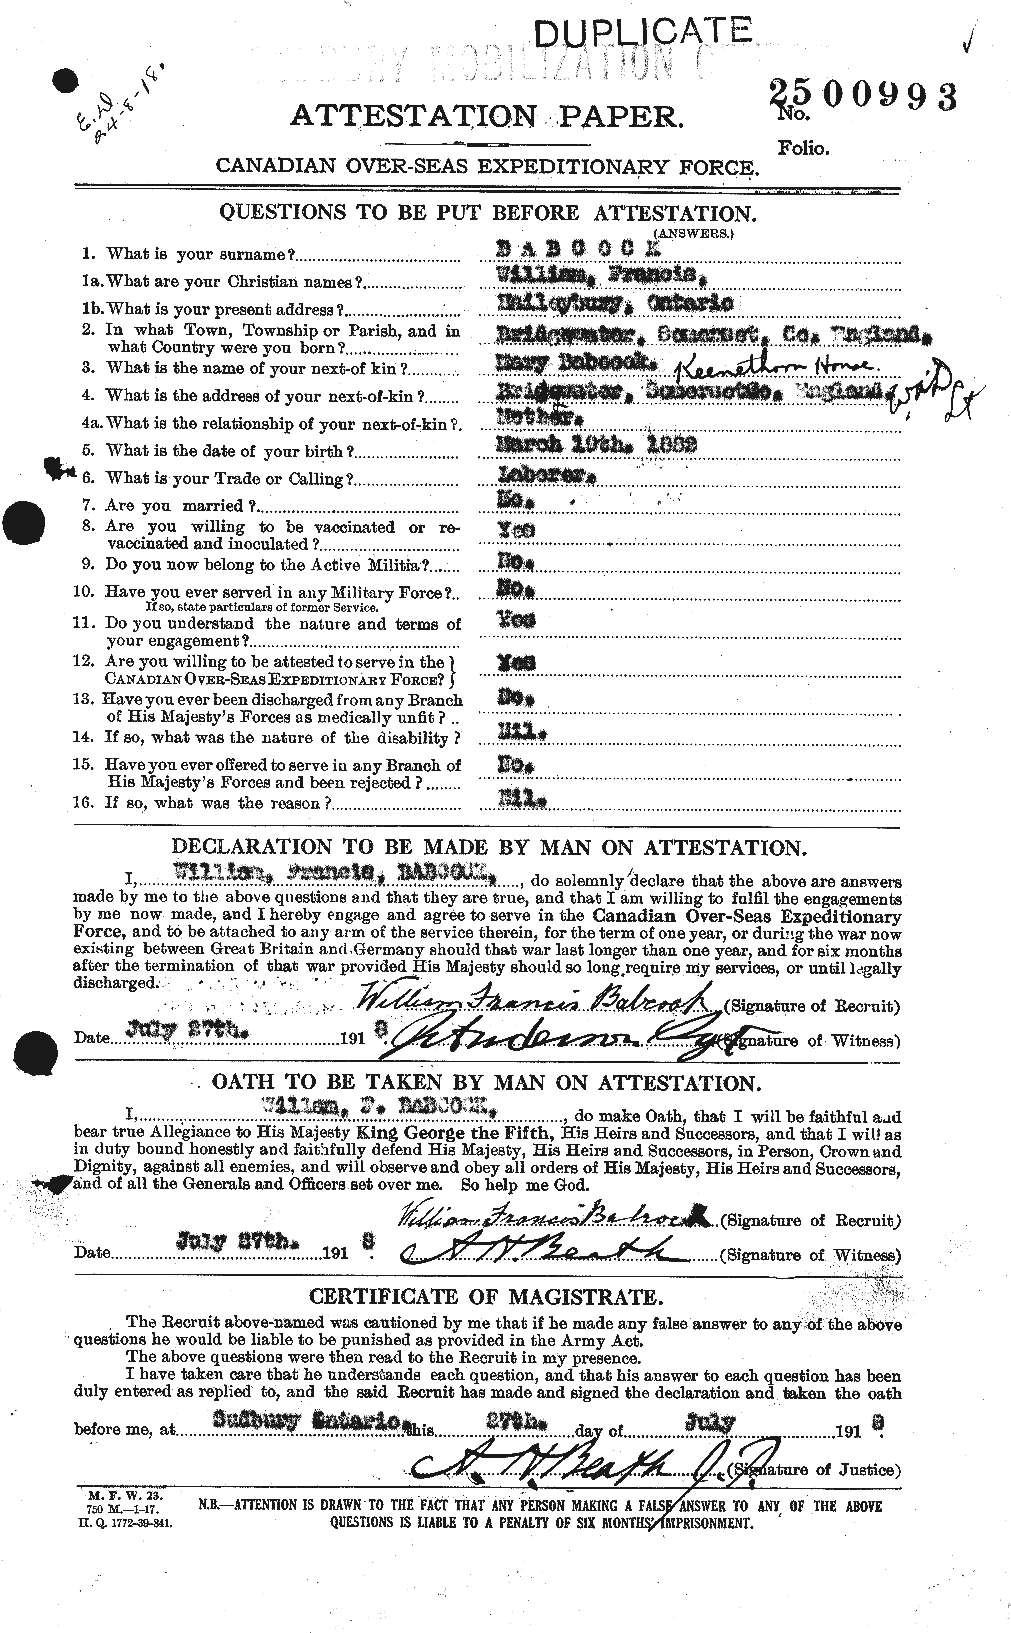 Dossiers du Personnel de la Première Guerre mondiale - CEC 218190a